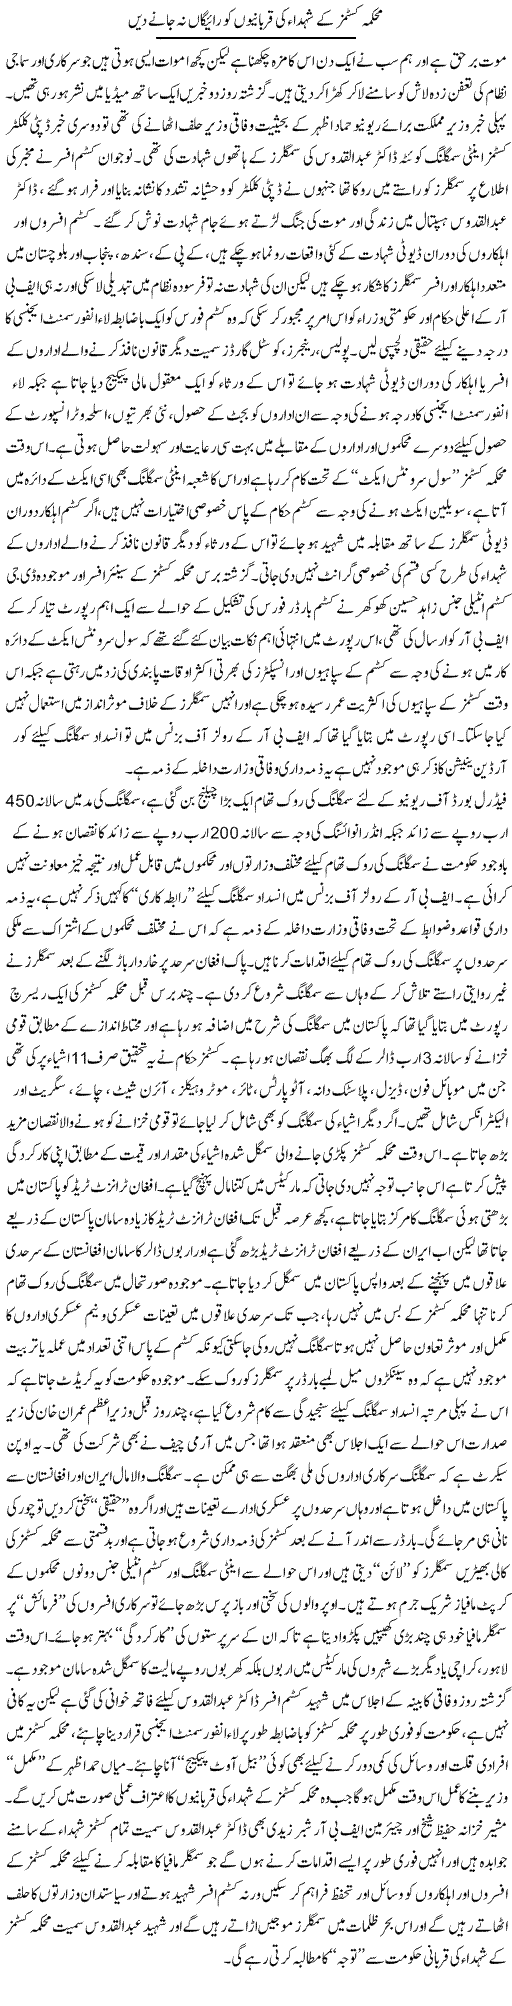 Mehkma Customs Ke Shuhada Ki Qurbanio Ko Raigan Na Jaane Dain | Rizwan Asif | Daily Urdu Columns